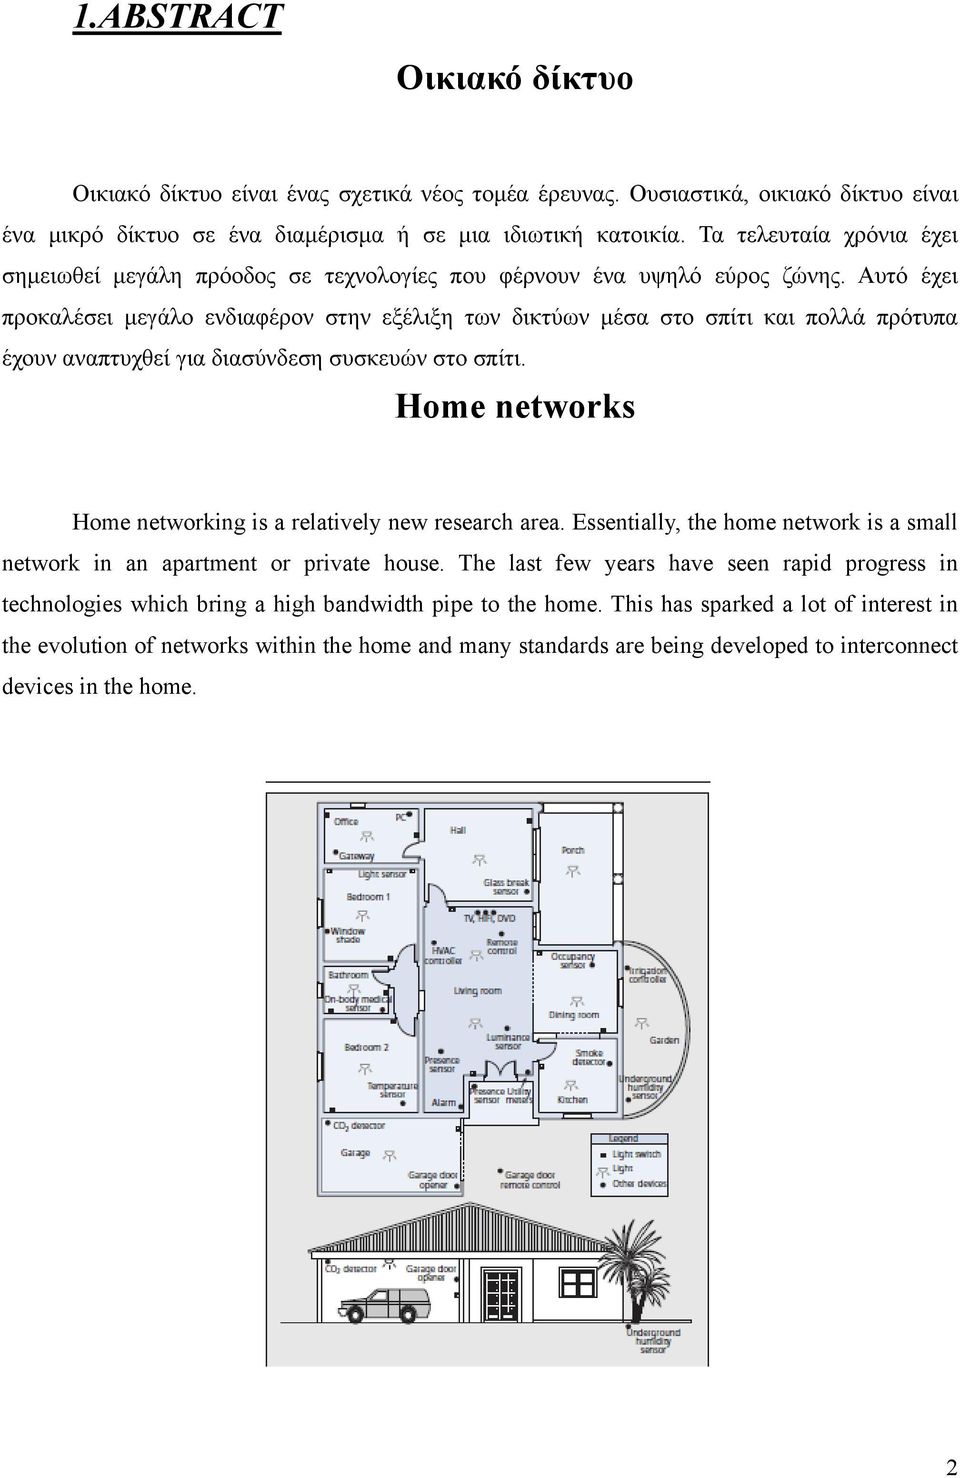 Αυτό έχει προκαλέσει μεγάλο ενδιαφέρον στην εξέλιξη των δικτύων μέσα στο σπίτι και πολλά πρότυπα έχουν αναπτυχθεί για διασύνδεση συσκευών στο σπίτι.